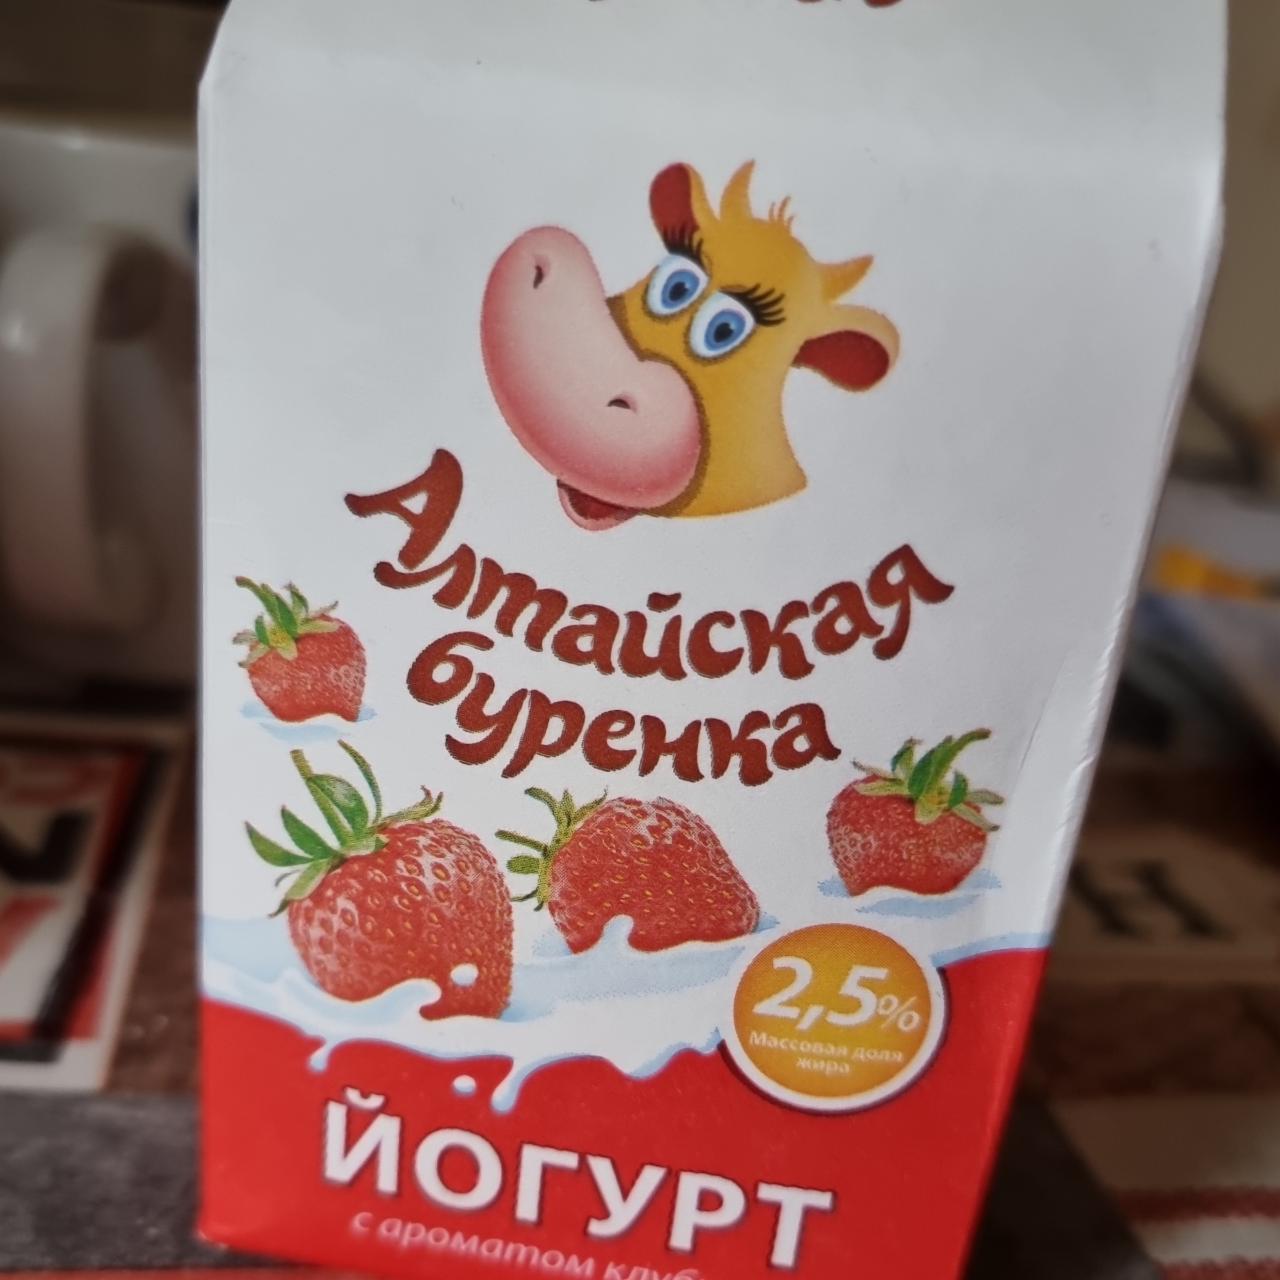 Фото - йогурт питьевой с ароматом клубники Алтайская бурёнка